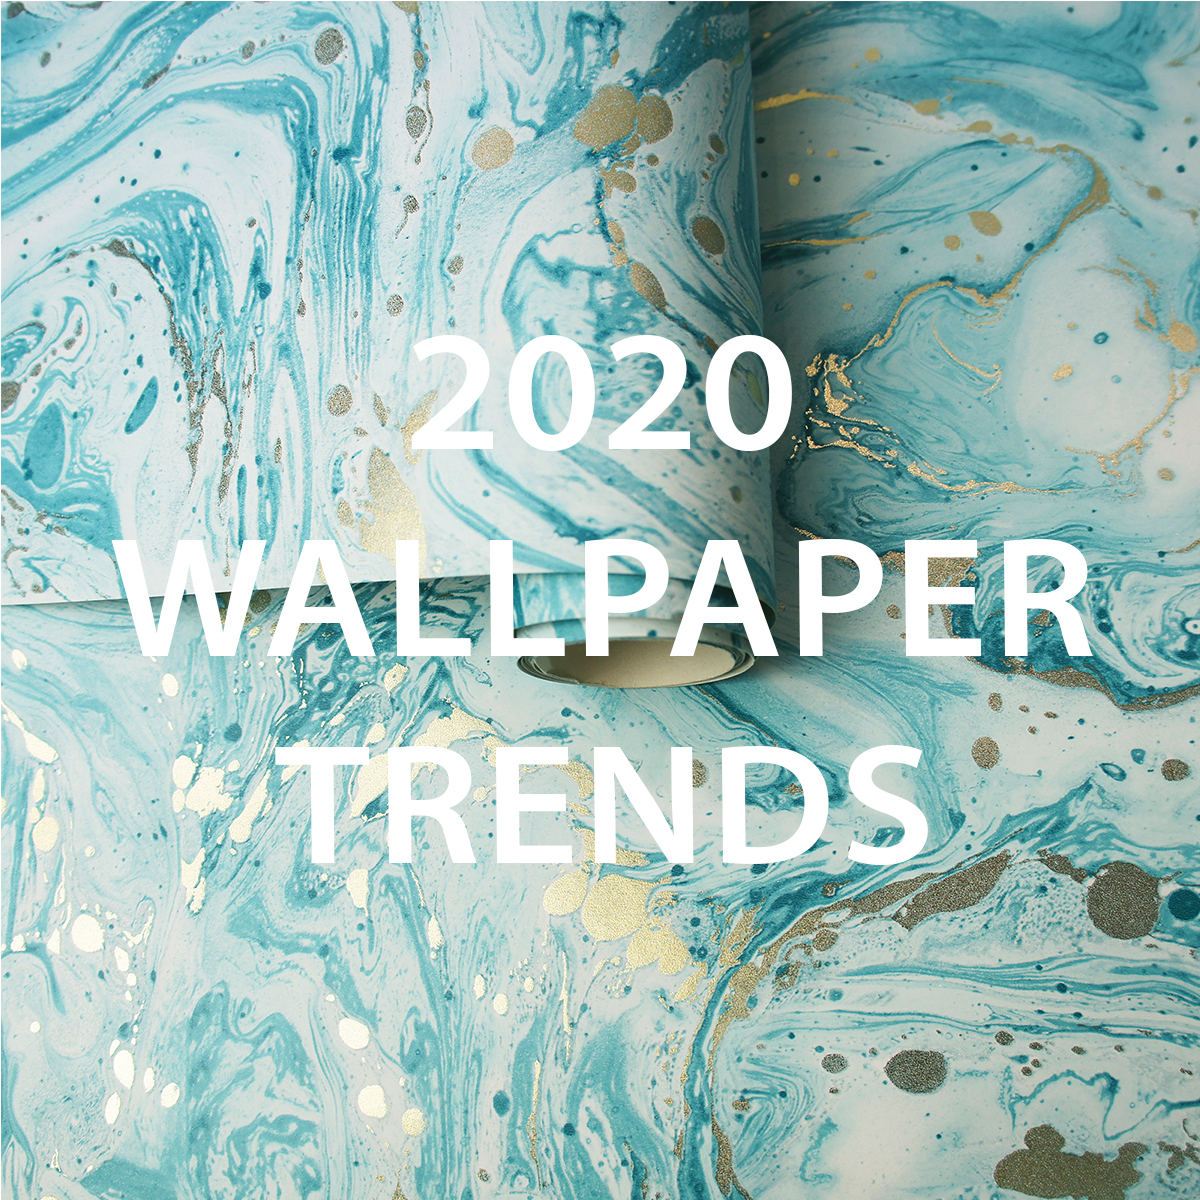 Wallpaper Trends For 2020,Desert Landscaping Backyard Ideas